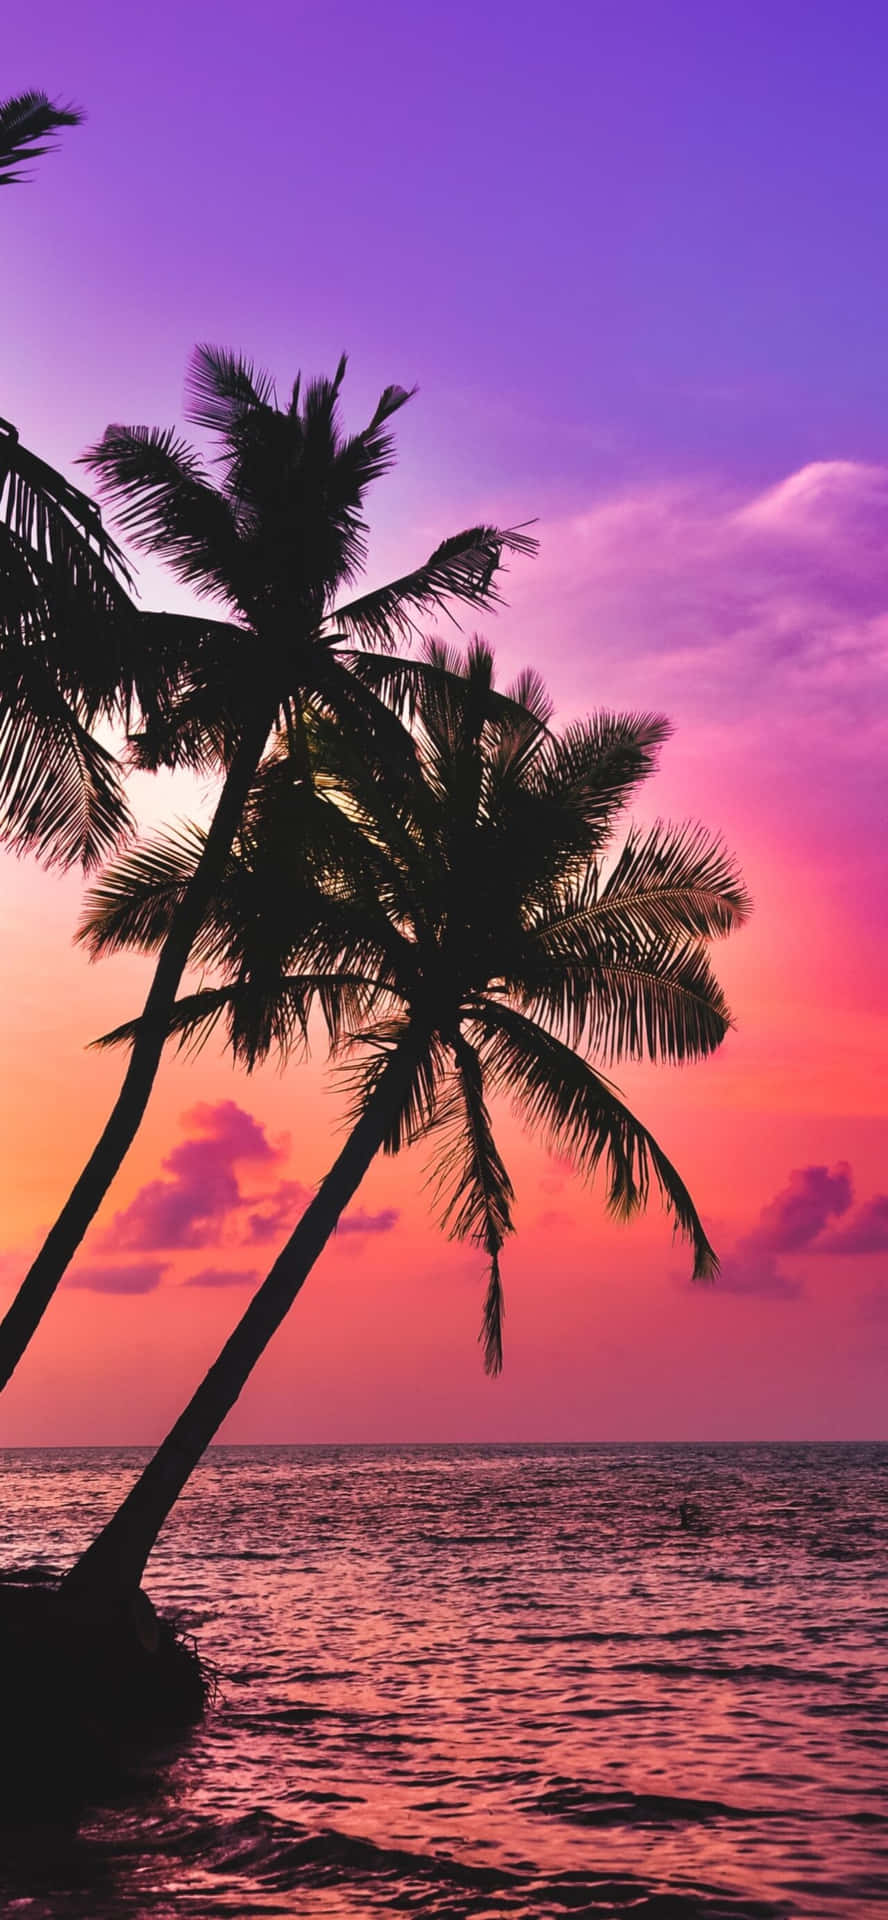 Palme træer i havet ved solnedgang